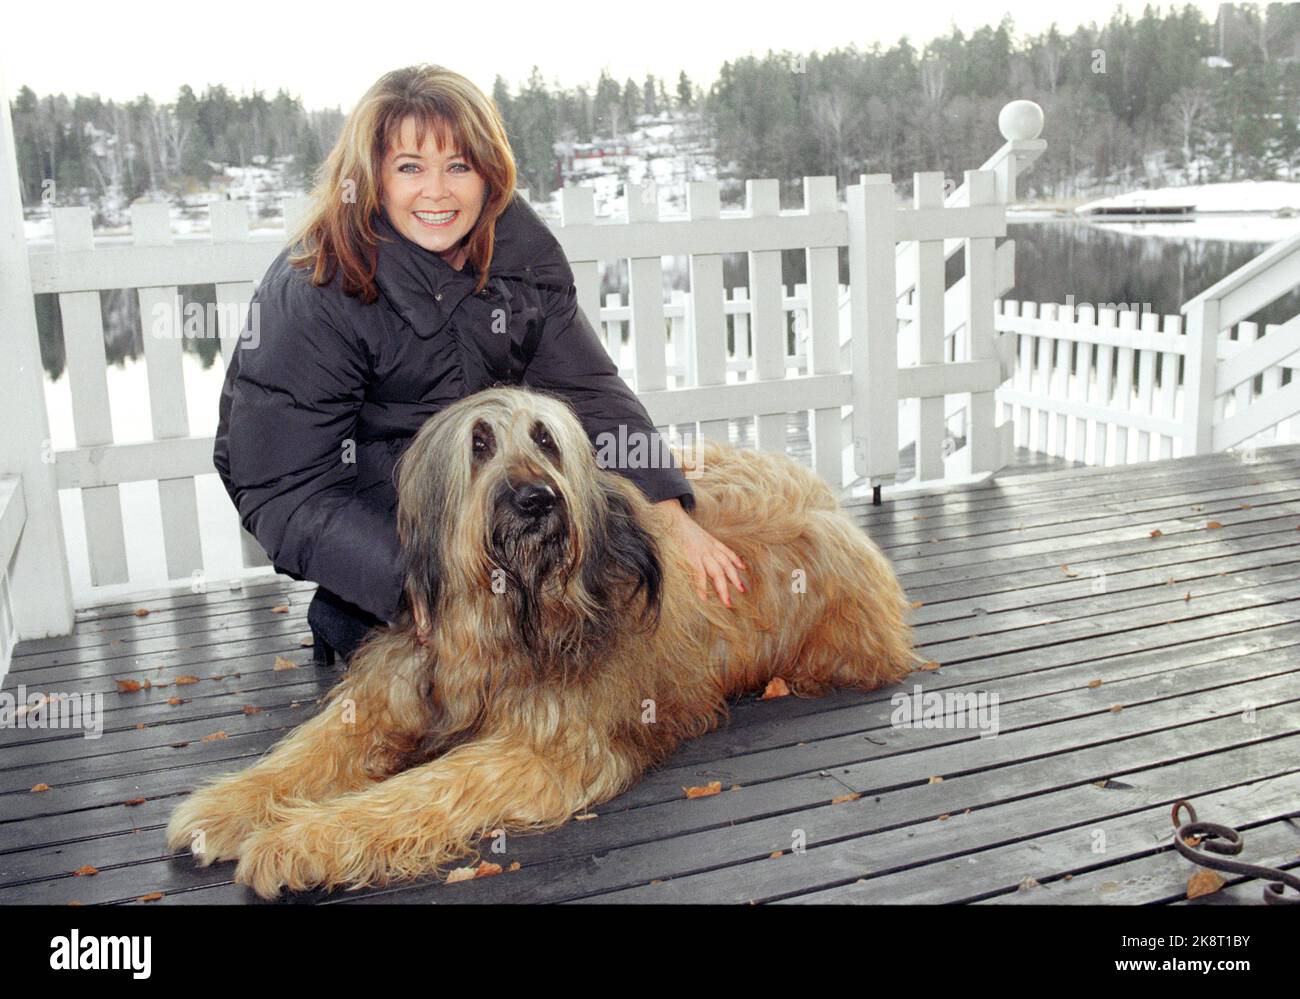 Nesøya 19970206. Wenche Myhre con il suo cane. La foto è stata scattata in anticipo dei suoi 50 anni. Foto: Per Løchen Archivio NTB / NTB Foto Stock